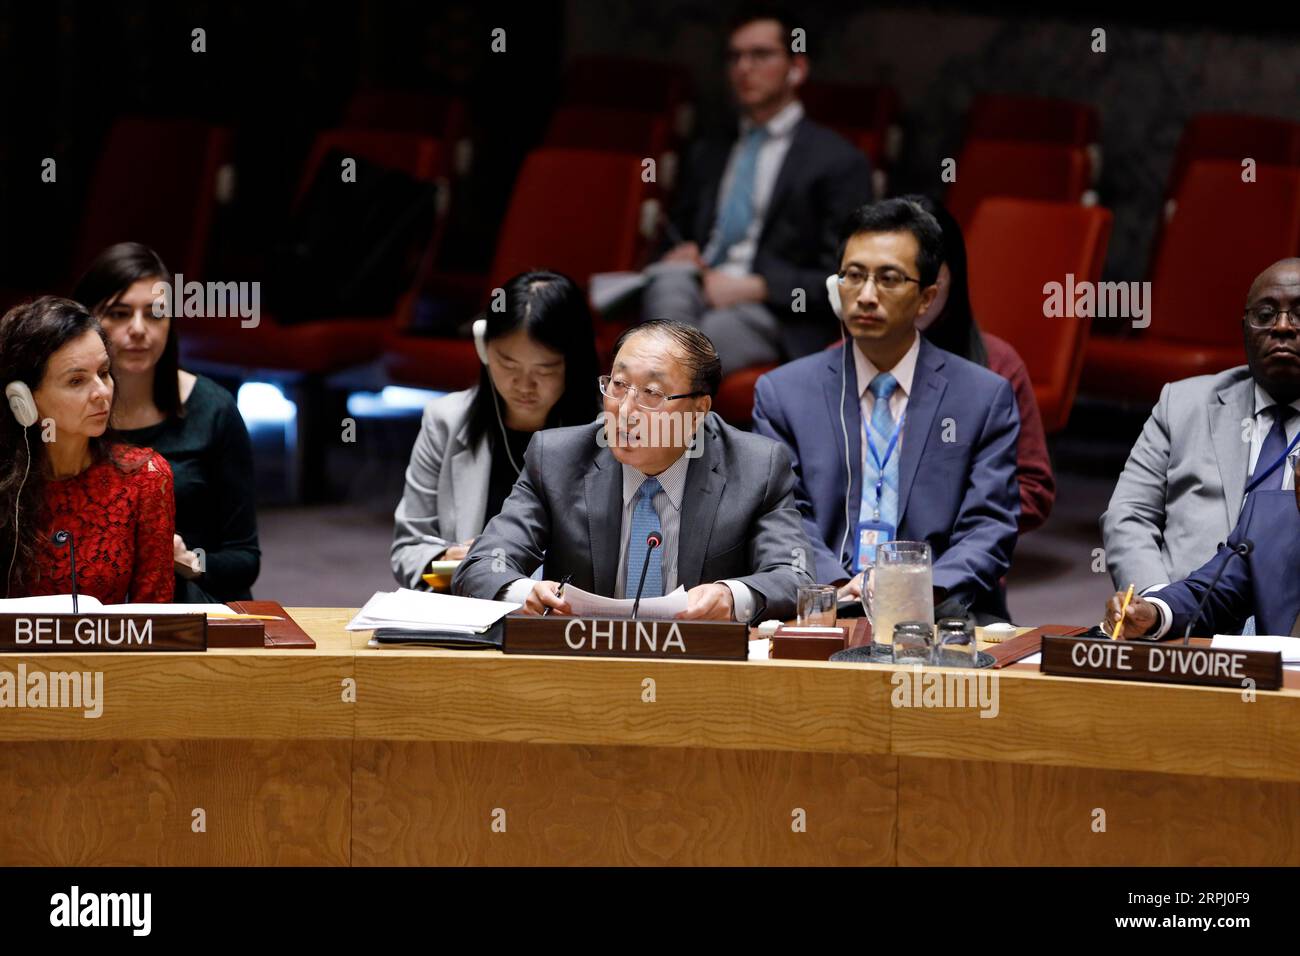 191121 -- VEREINTEN NATIONEN, 21. November 2019 -- Zhang Jun C, der ständige Vertreter Chinas bei den Vereinten Nationen, spricht am 20. November 2019 im UN-Hauptquartier in New York an einer Sitzung des Sicherheitsrats zum palästinensisch-israelischen Konflikt. Zhang Jun forderte am Mittwoch ein Ende unverantwortlicher Rhetorik und Maßnahmen, die den palästinensisch-israelischen Konflikt noch komplizierter machen könnten. UN-SICHERHEITSRAT, PALÄSTINENSISCH-ISRAELISCHER KONFLIKT, CHINESISCHER GESANDTER LIXMUZI PUBLICATIONXNOTXINXCHN Stockfoto